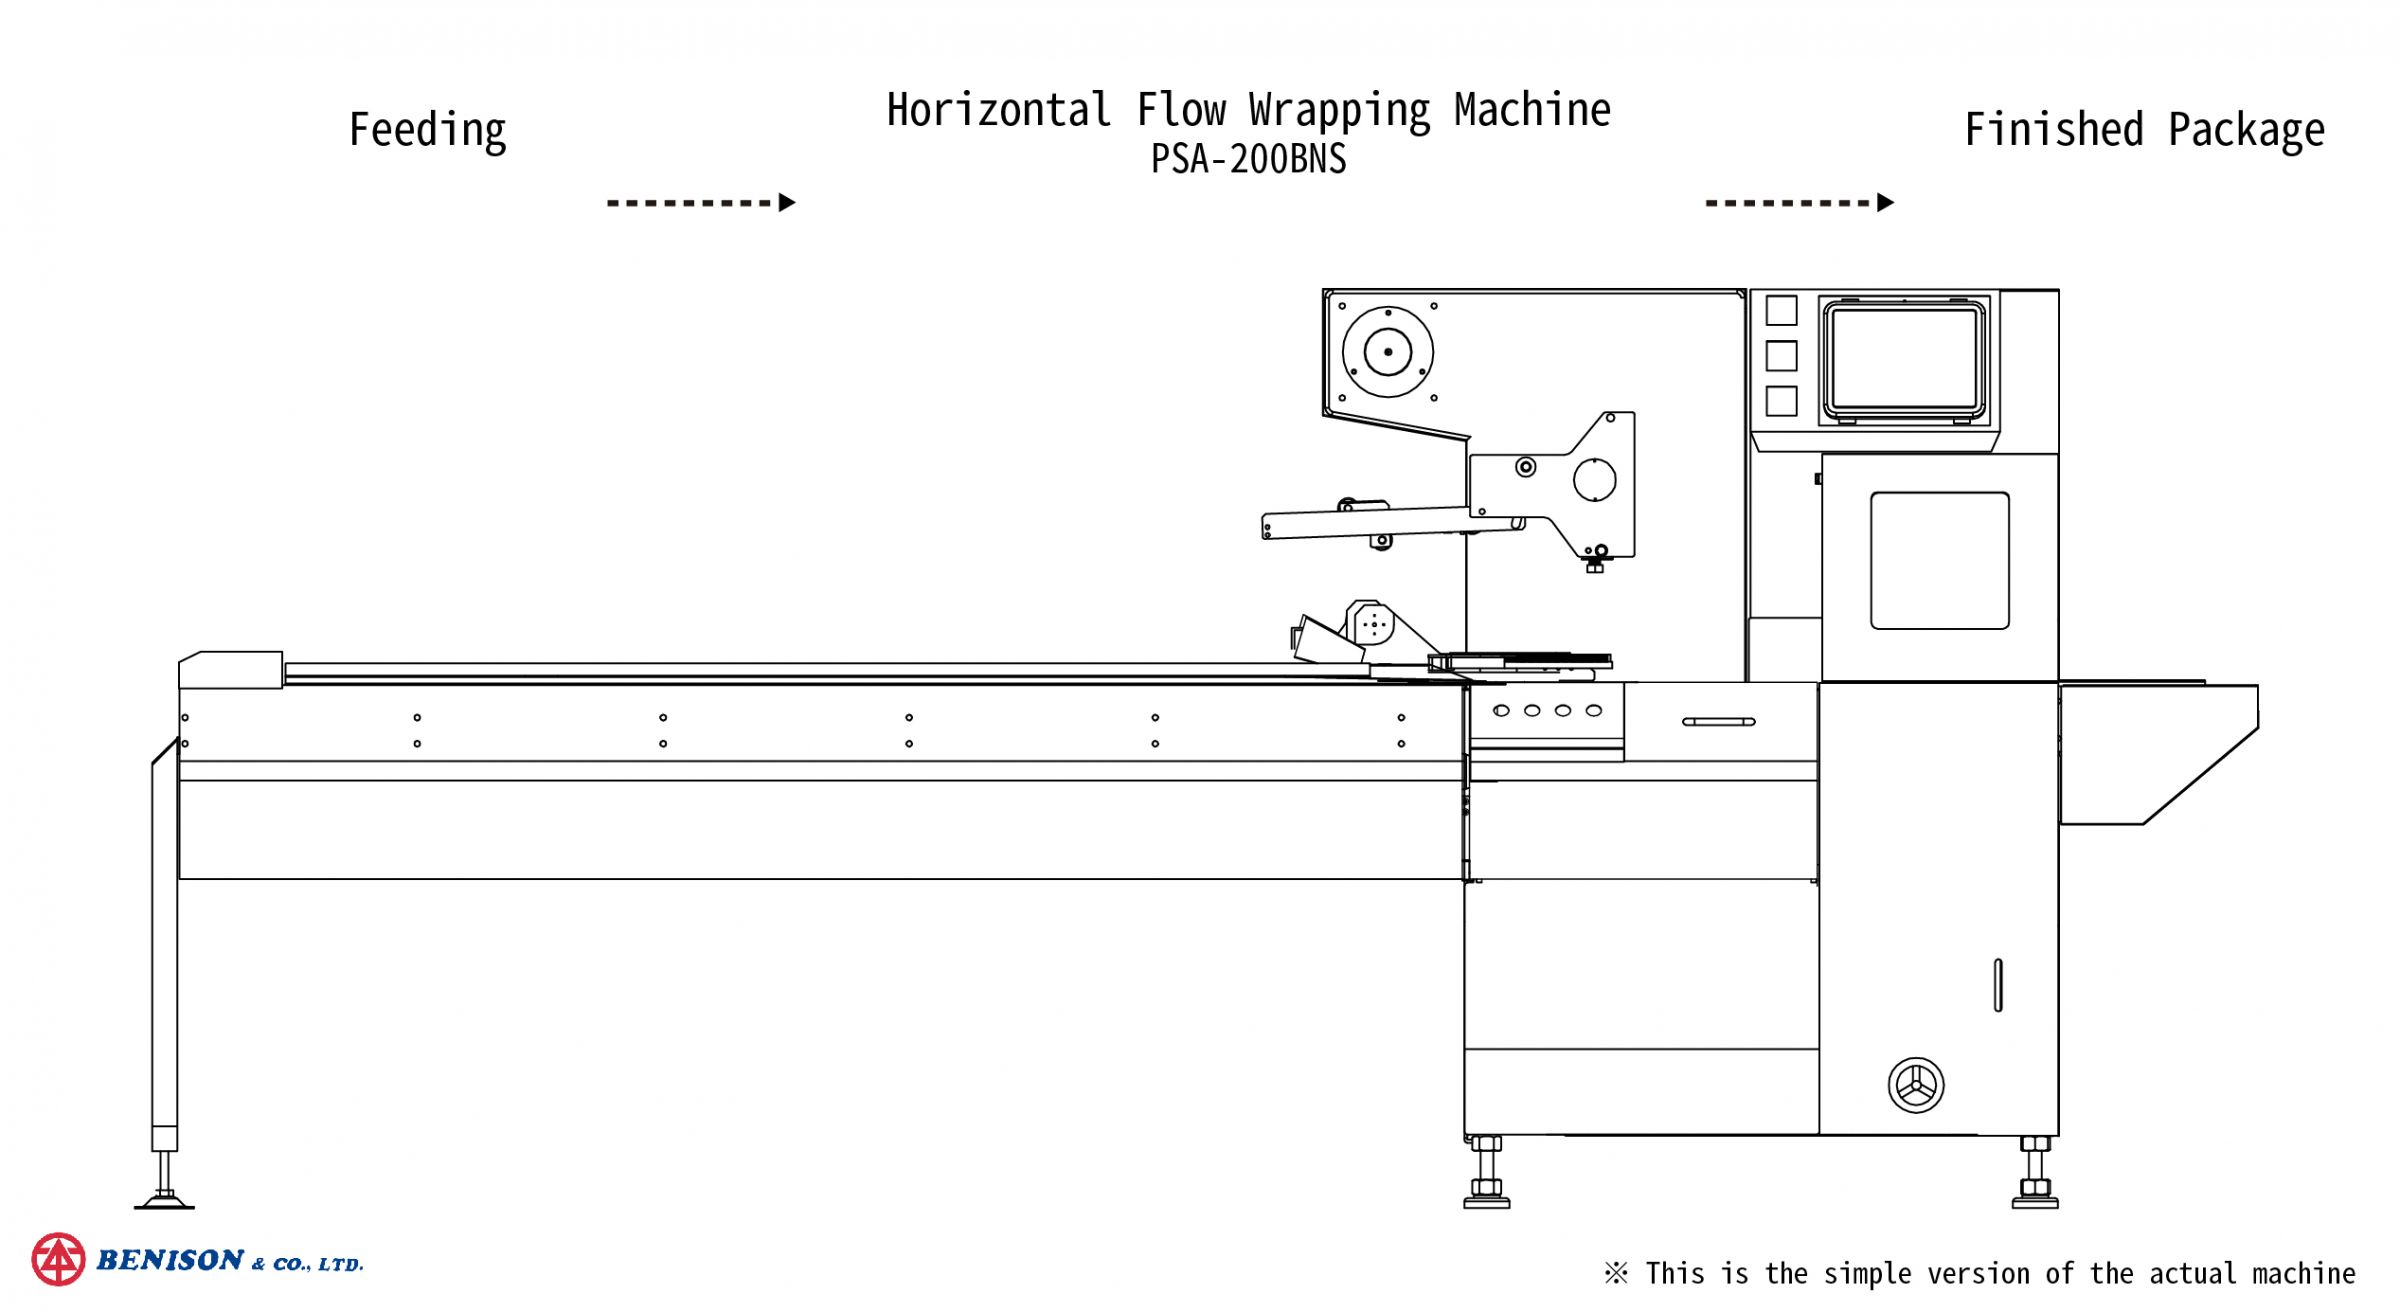 Máquina de Embalagem Flow Wrapping Horizontal, PSA-200BNS para solução de embalagem de máscara